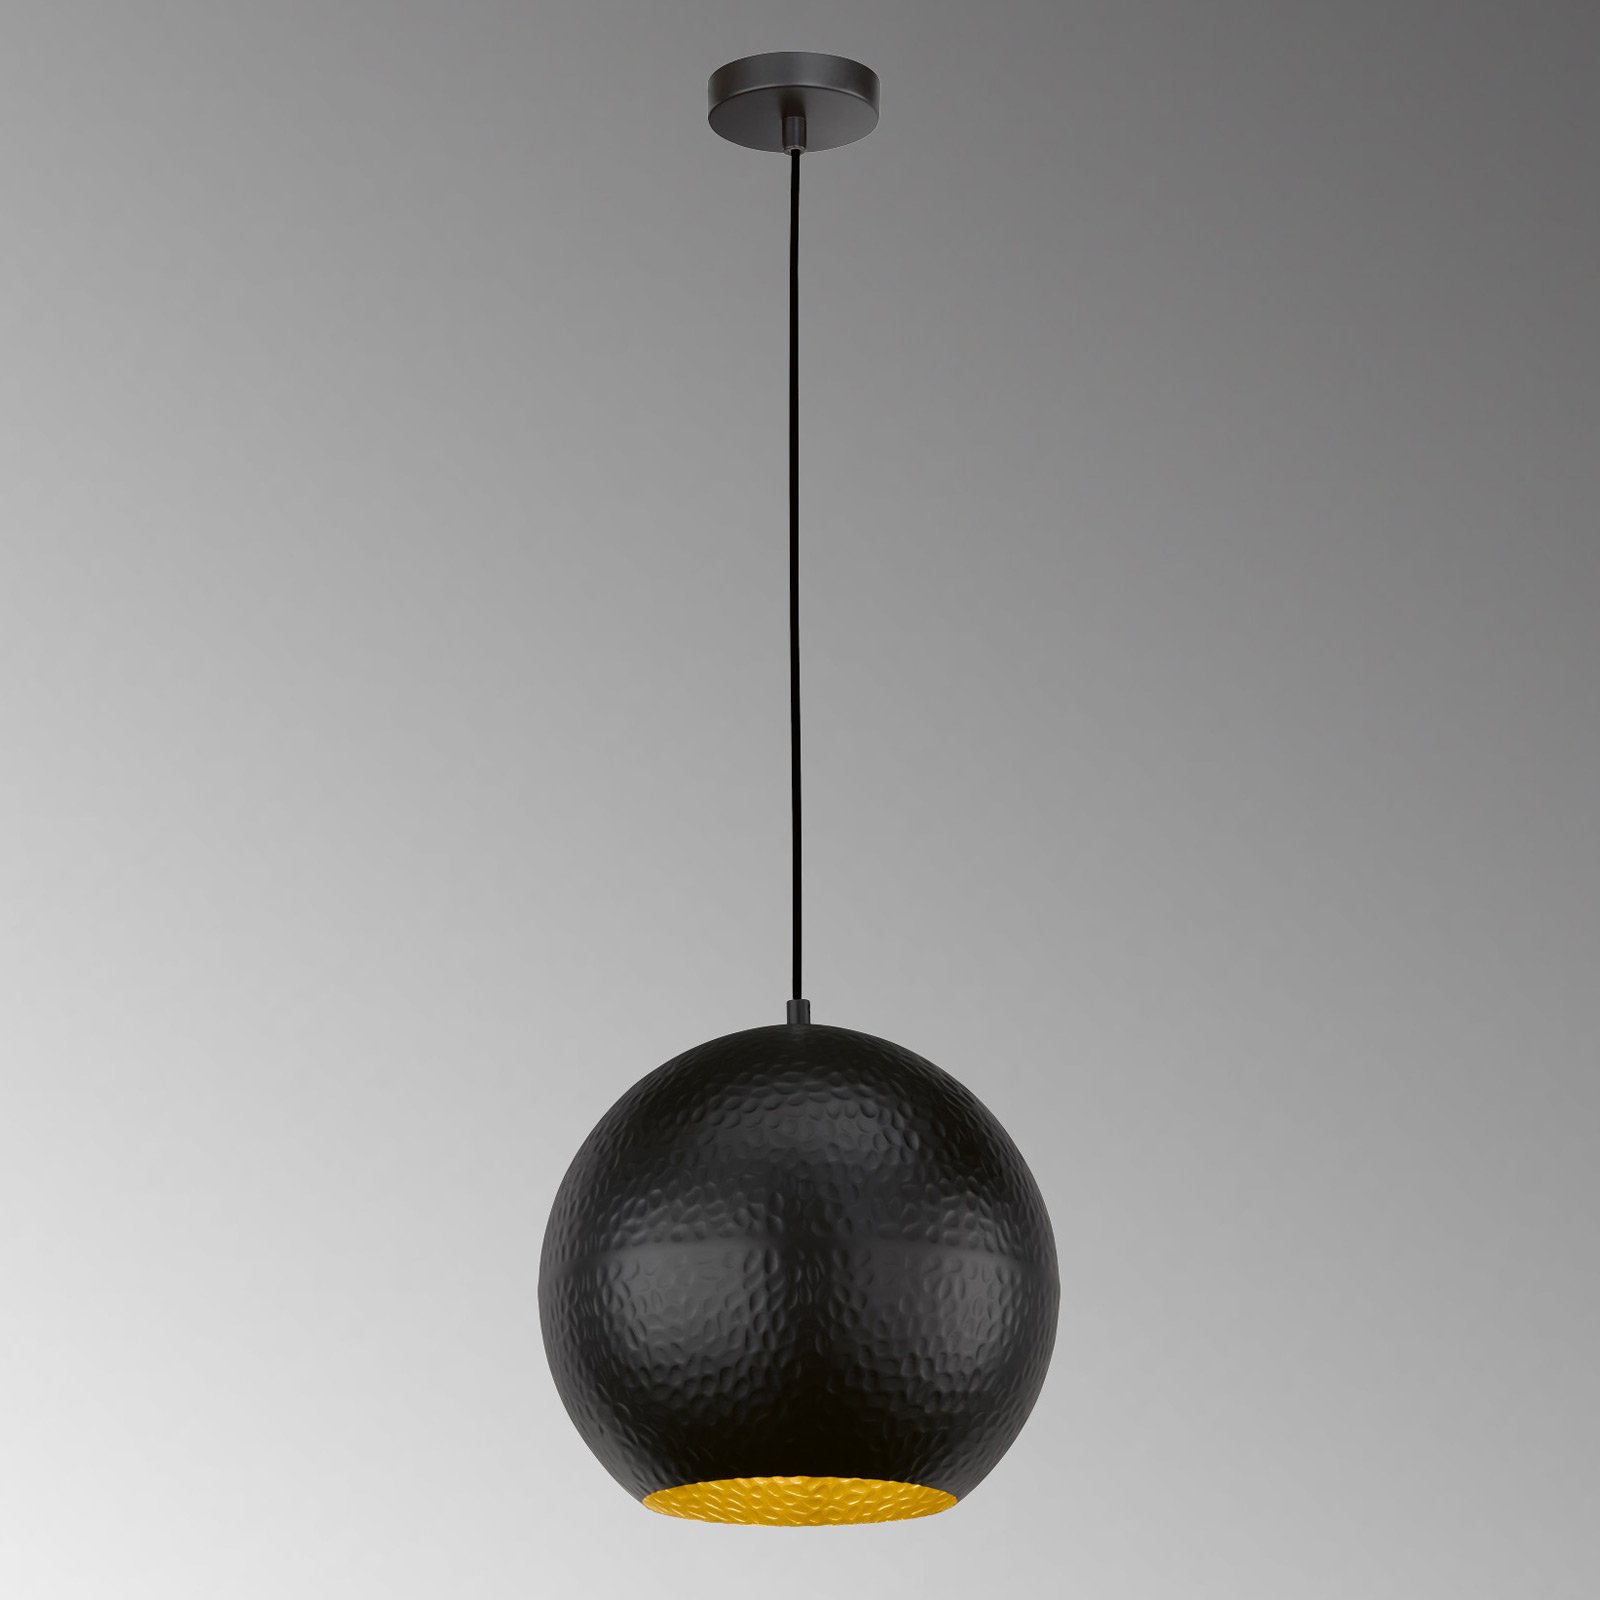 Mylon hanging light, black/gold, spherical